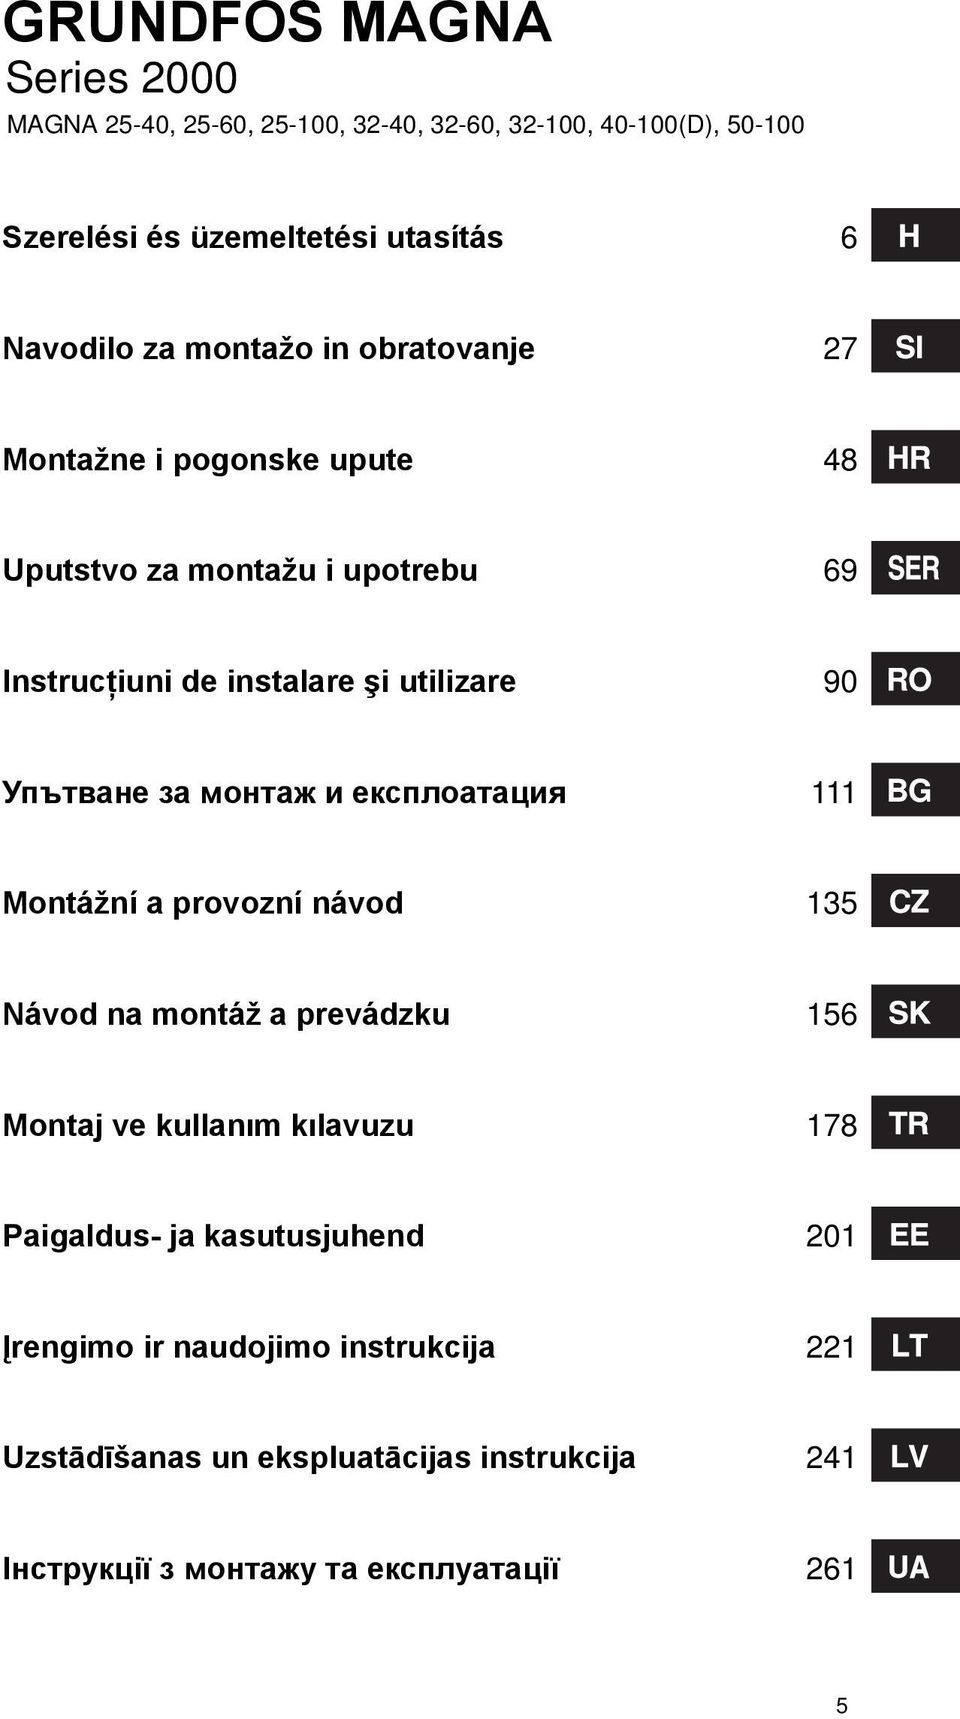 Упътване за монтаж и експлоатация 111 Montážní a provozní návod 135 Návod na montáž a prevádzku 156 Montaj ve kullanım kılavuzu 178